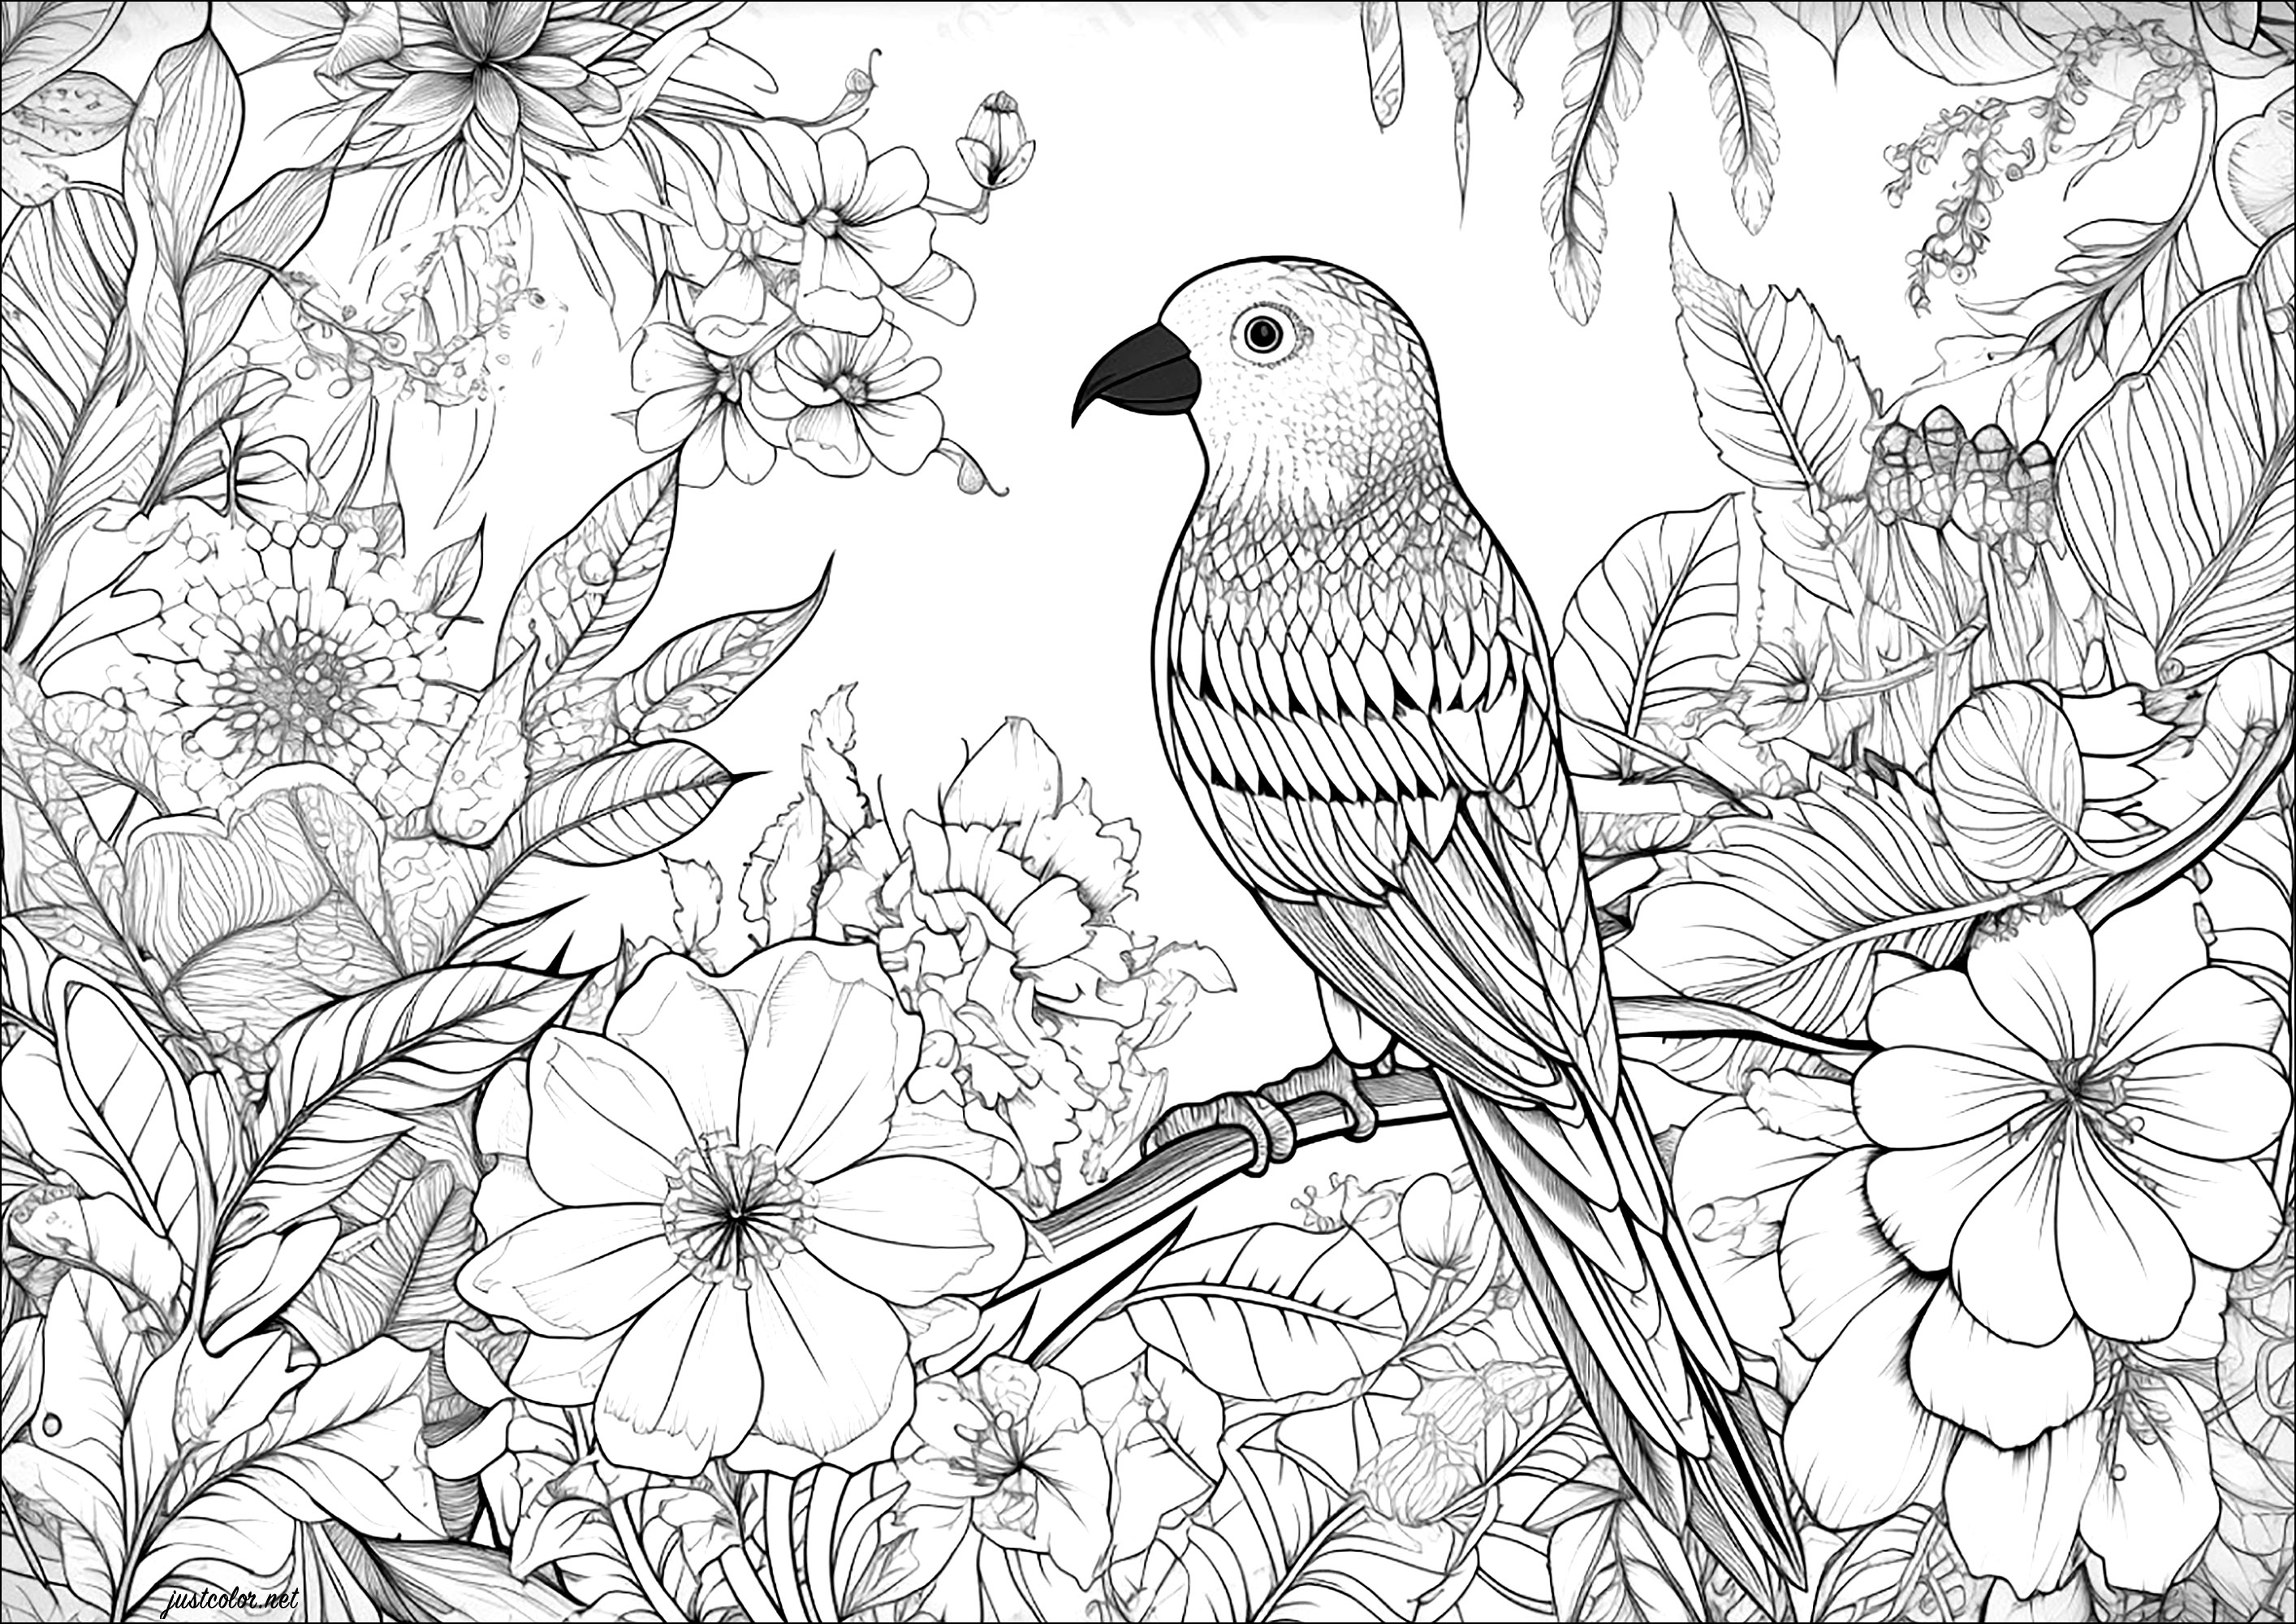 Bellissimo uccello e sfondo fiorito. Una pagina da colorare con molti dettagli da colorare, sia nell'uccello che nei fiori sullo sfondo.